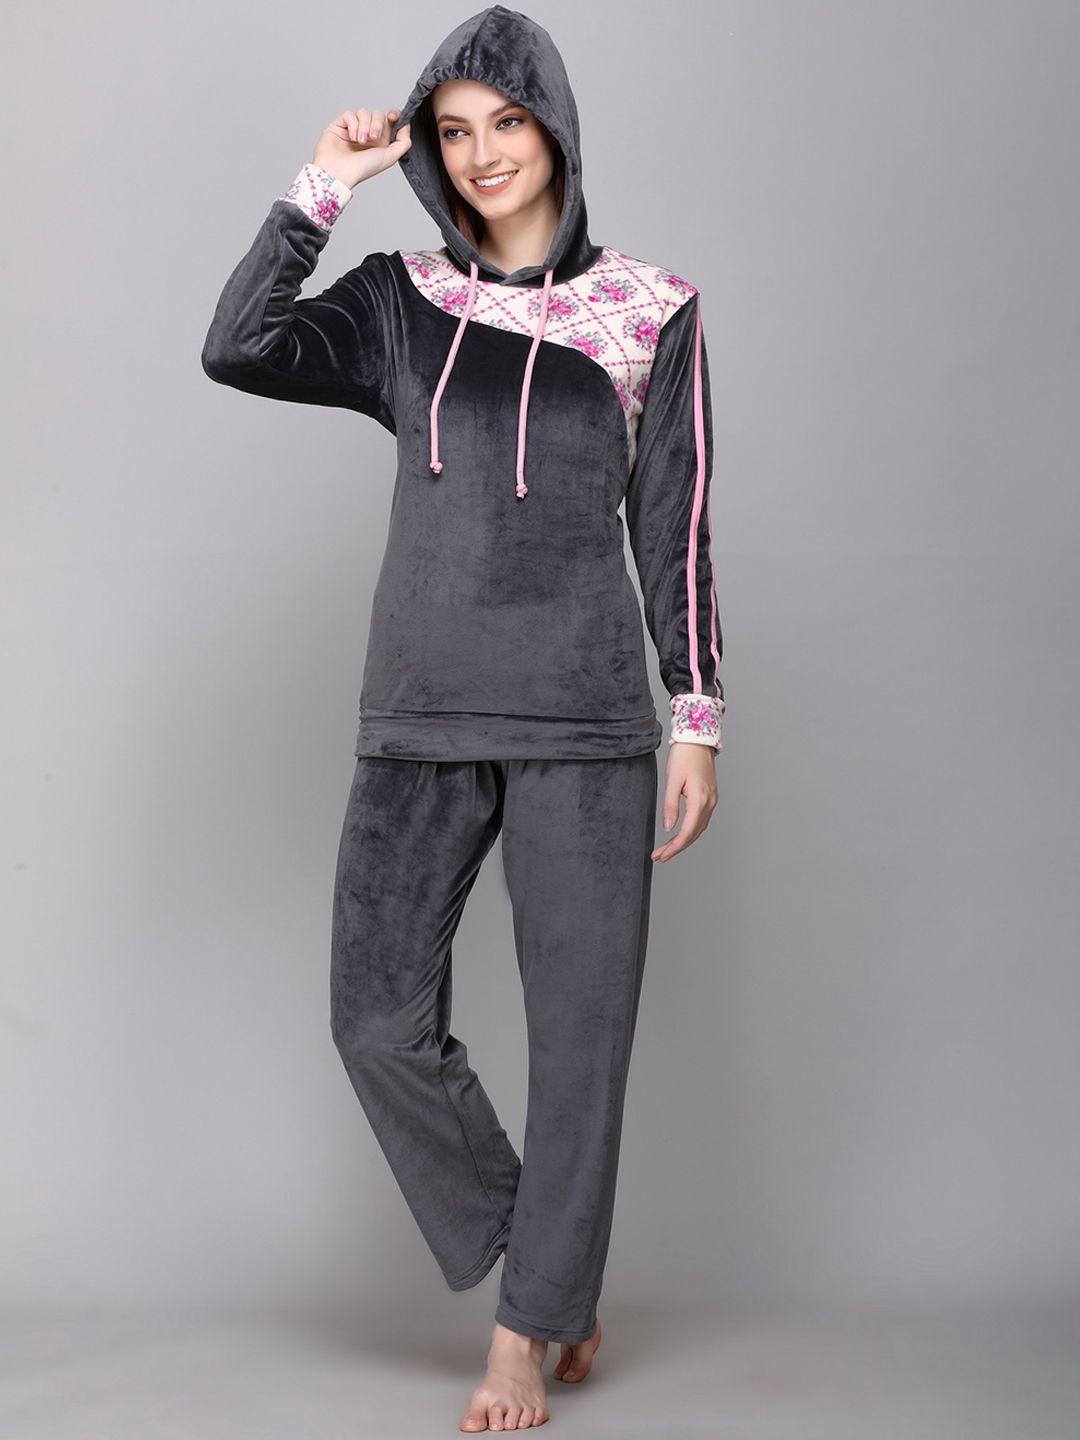 cushybee-women-grey-&-pink-floral-printed-hooded-velvet-winter-night-suit